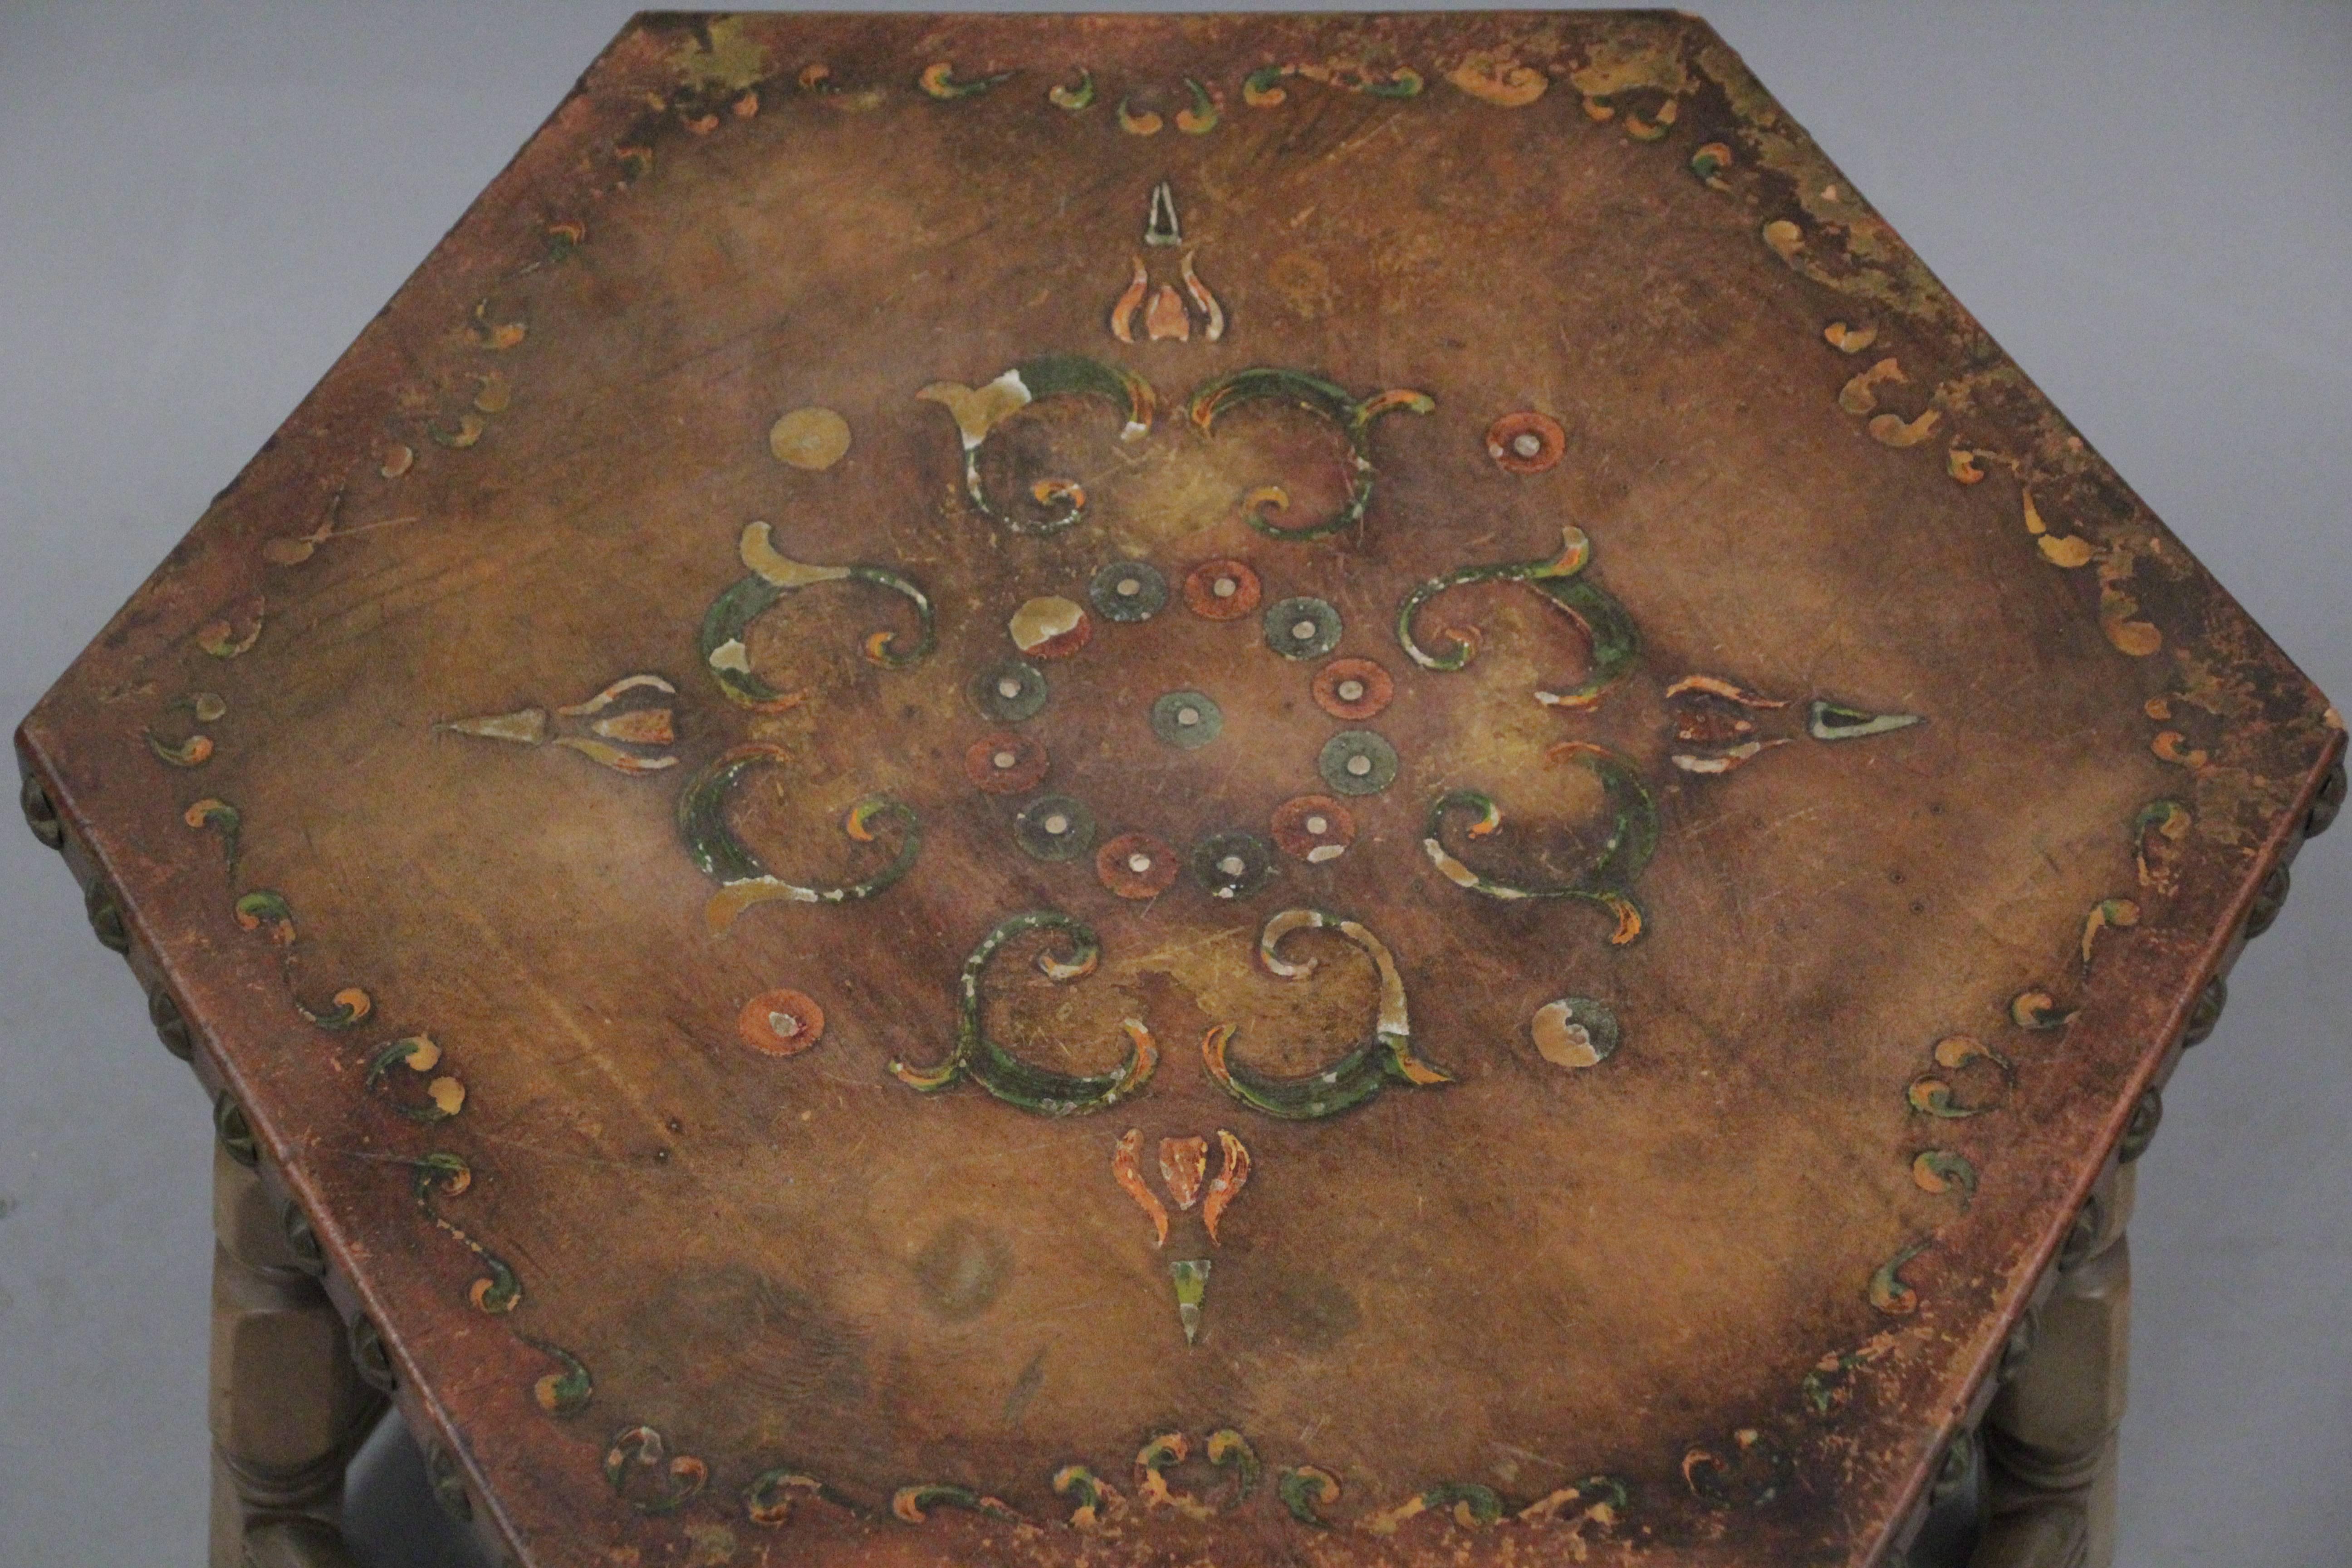 1920s Spanish Revival California Hexagonal Side Table 2